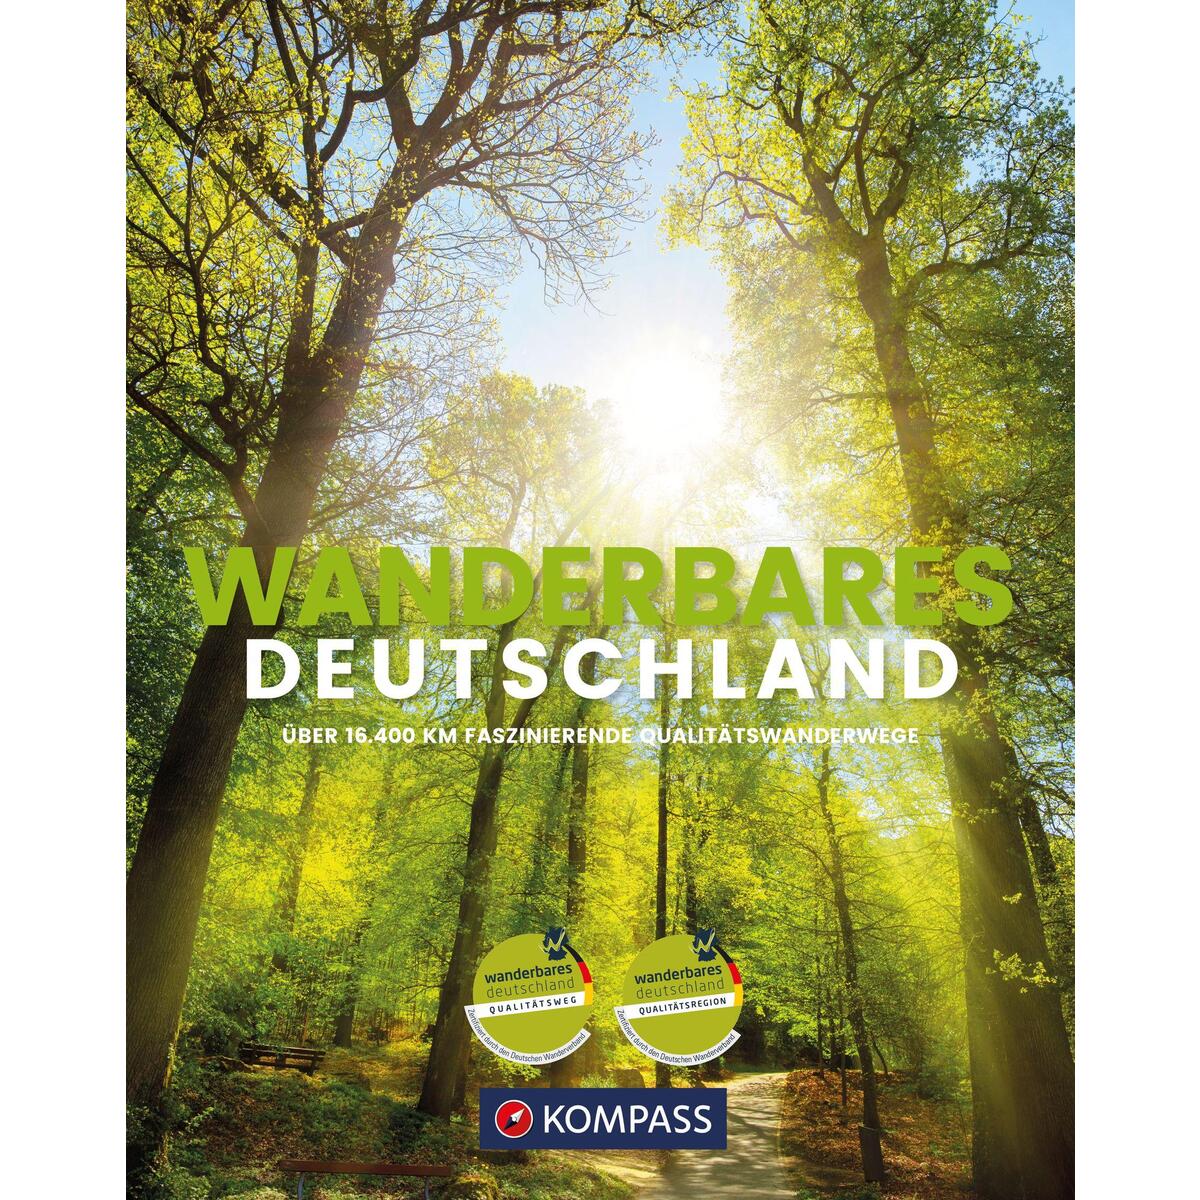 KOMPASS Bildband »Wanderbares Deutschland« von Kompass Karten GmbH